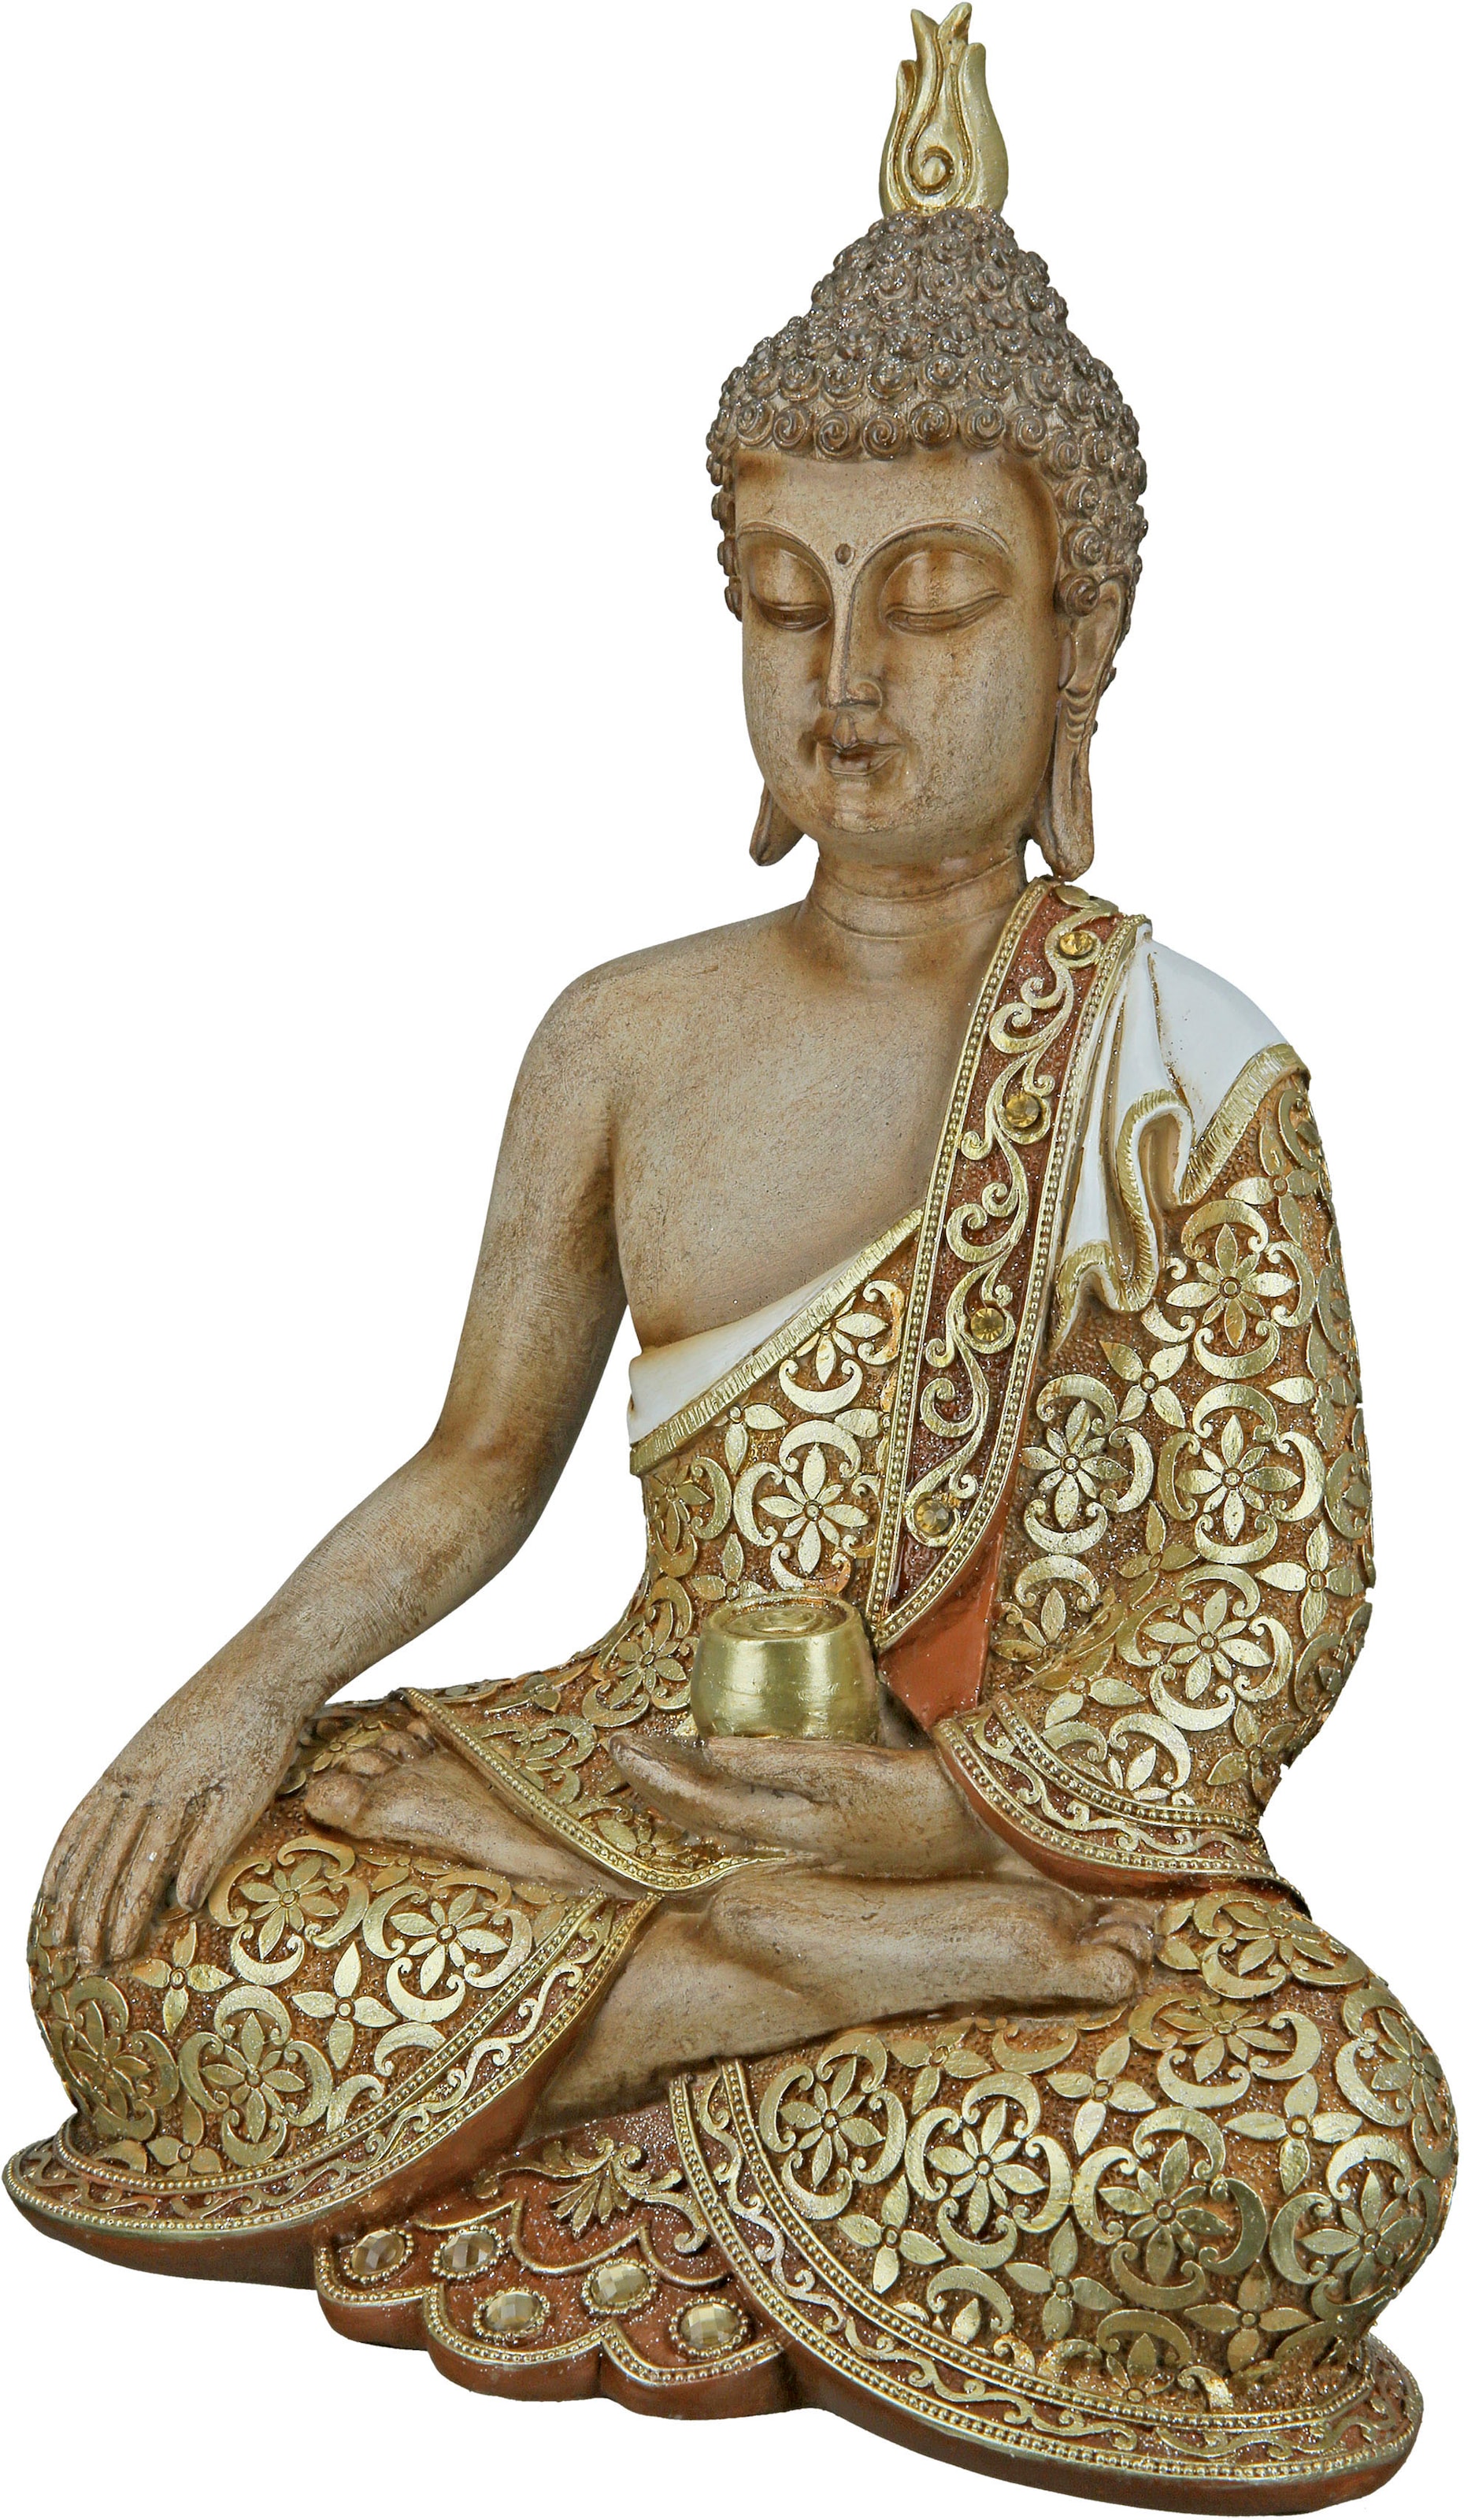 Buddhafiguren online kaufen | Buddhafigur auf